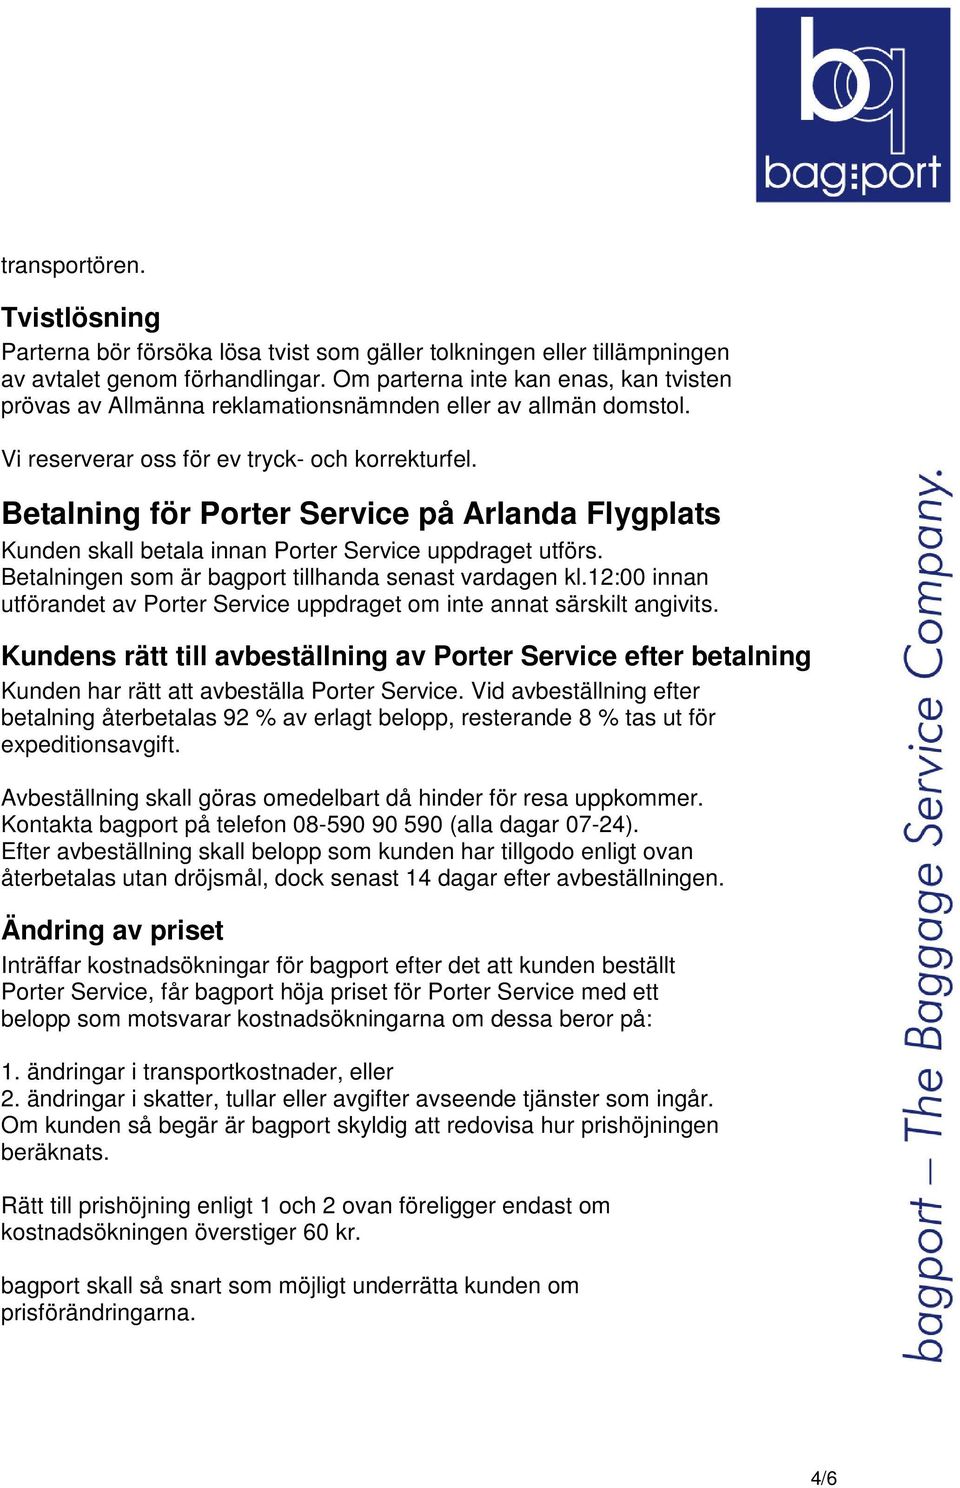 Betalning för Porter Service på Arlanda Flygplats Kunden skall betala innan Porter Service uppdraget utförs. Betalningen som är bagport tillhanda senast vardagen kl.